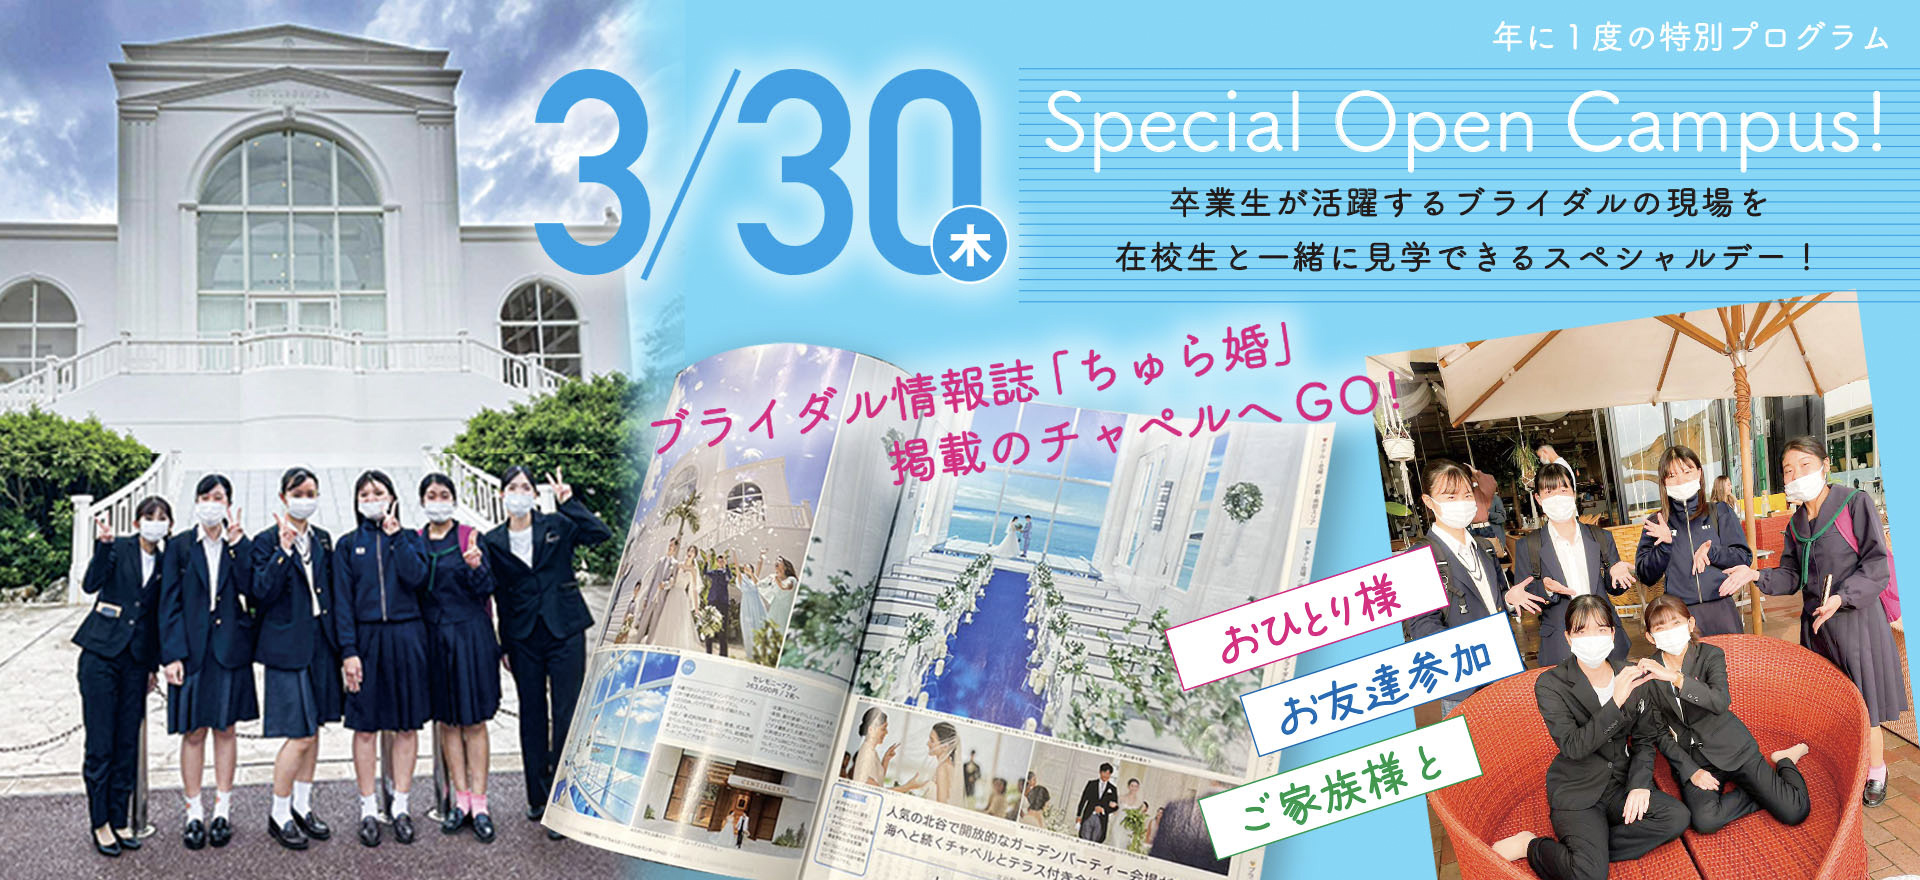 3/30 木 Special Open Campus! ブライダル情報誌「ちゅら婚」掲載のチャペルへGO！